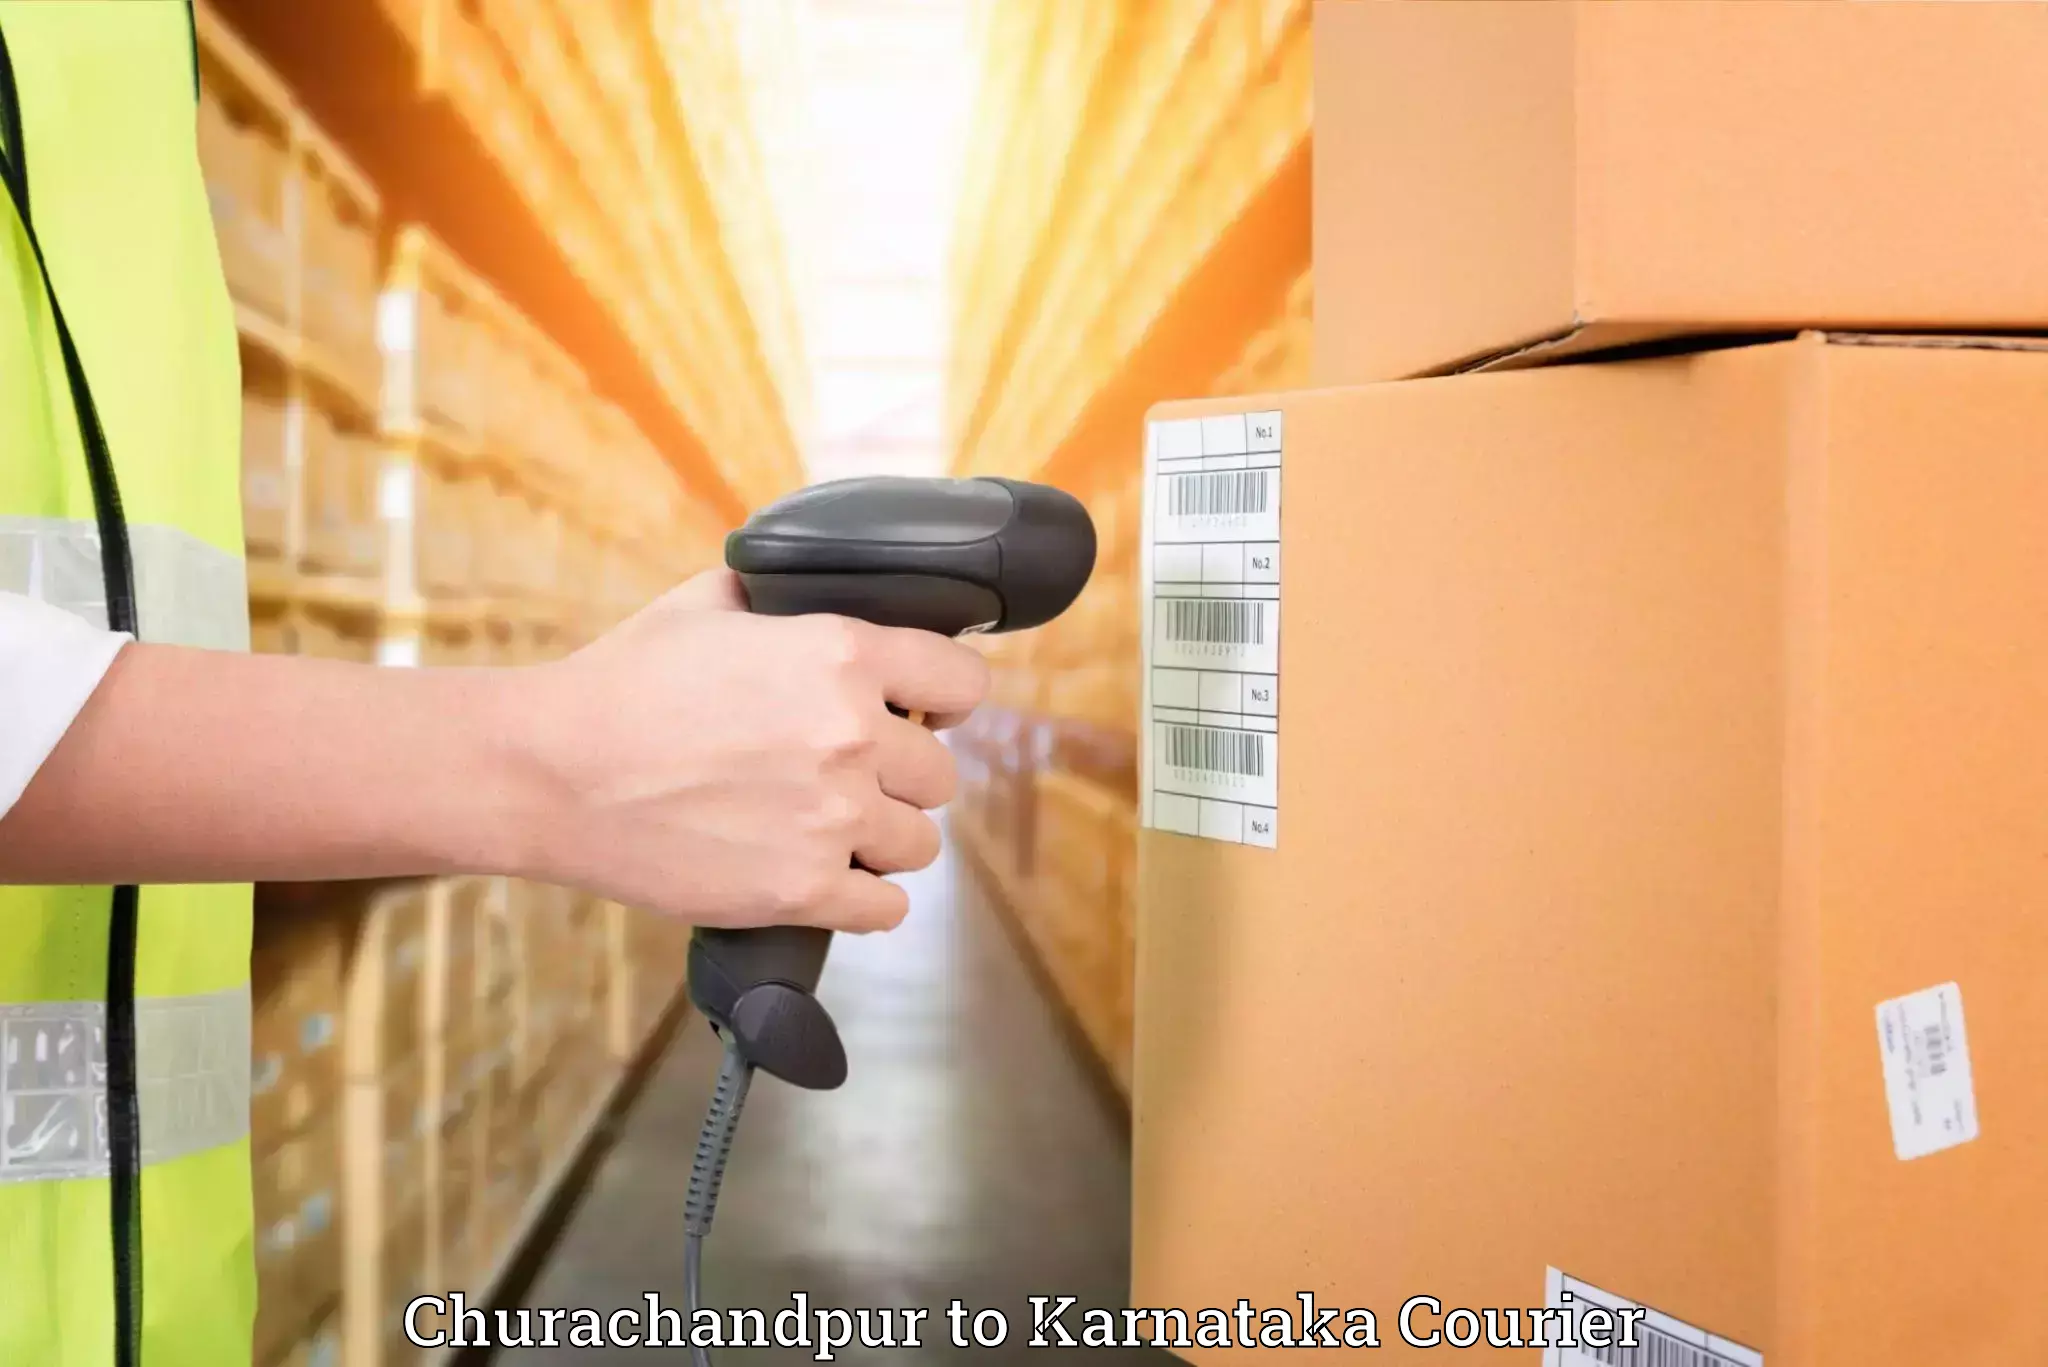 Furniture relocation experts Churachandpur to Yellare